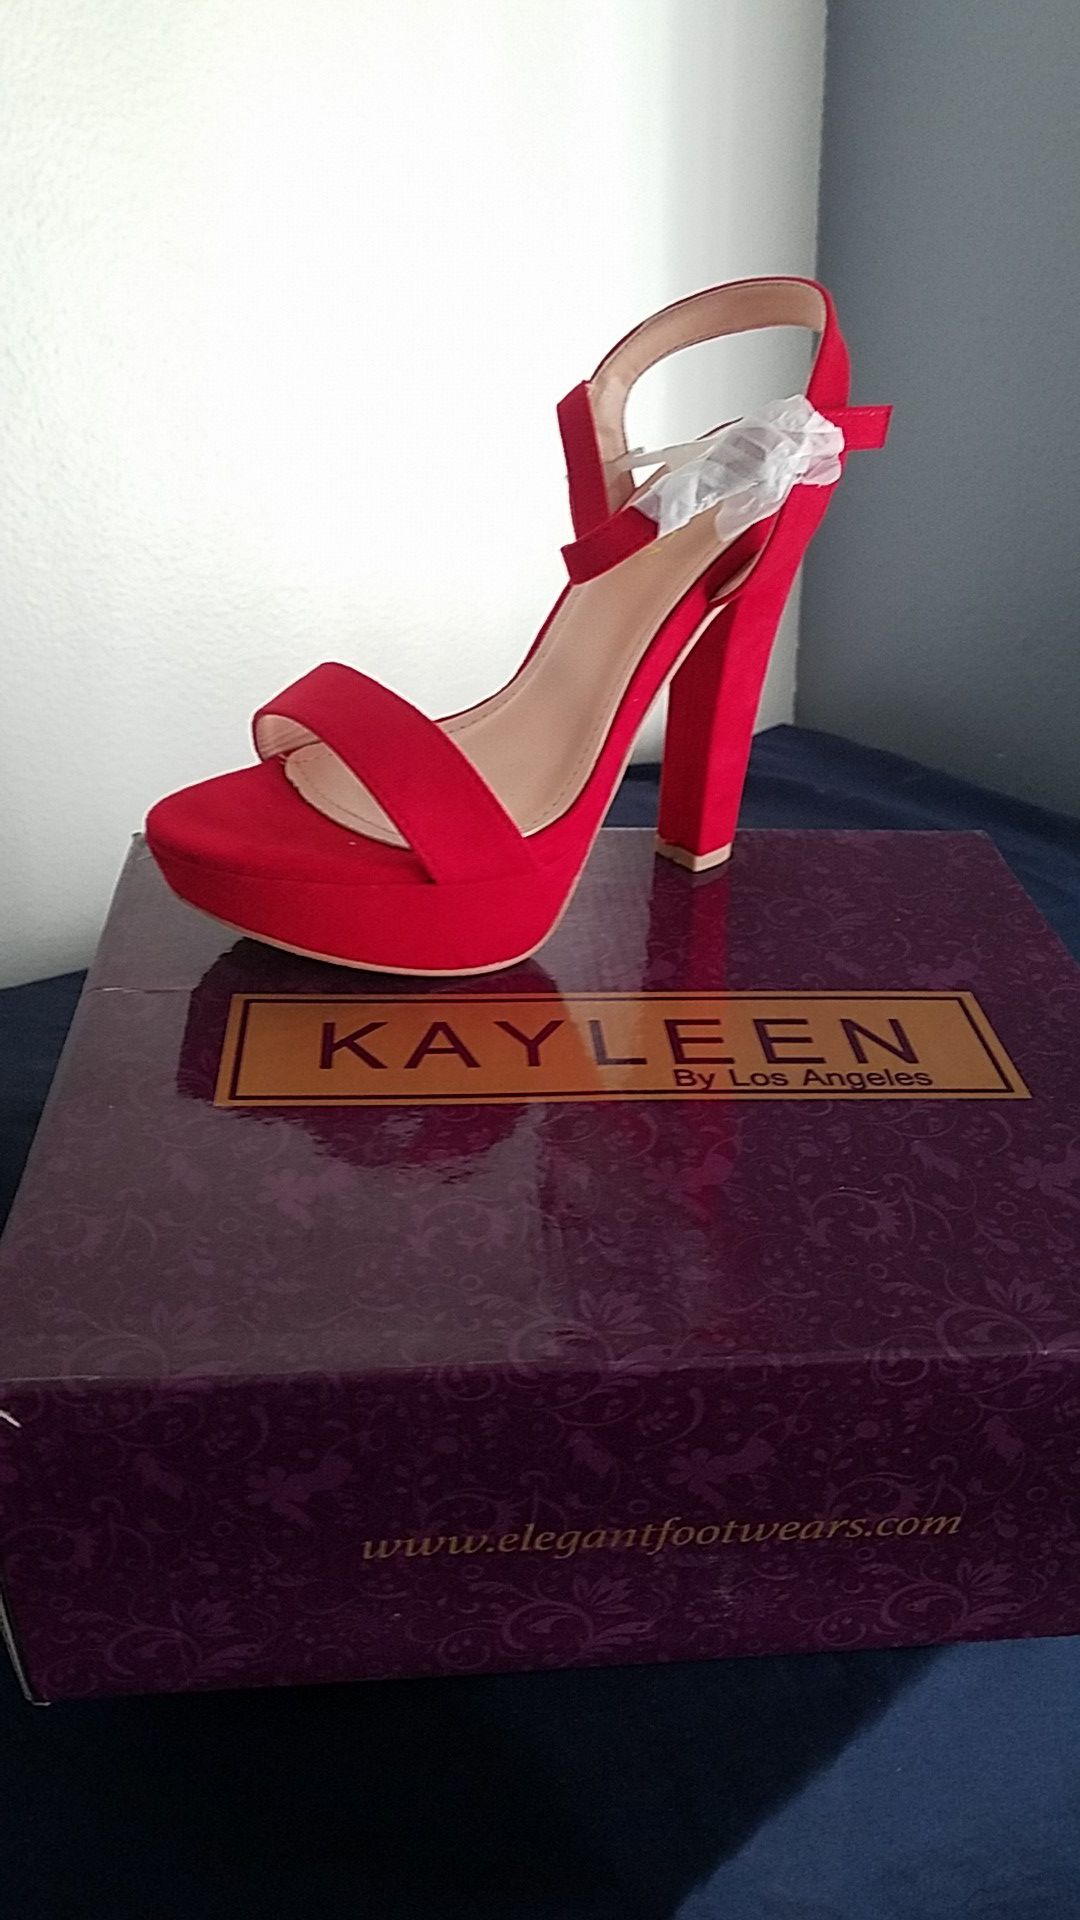 Kayleen heels